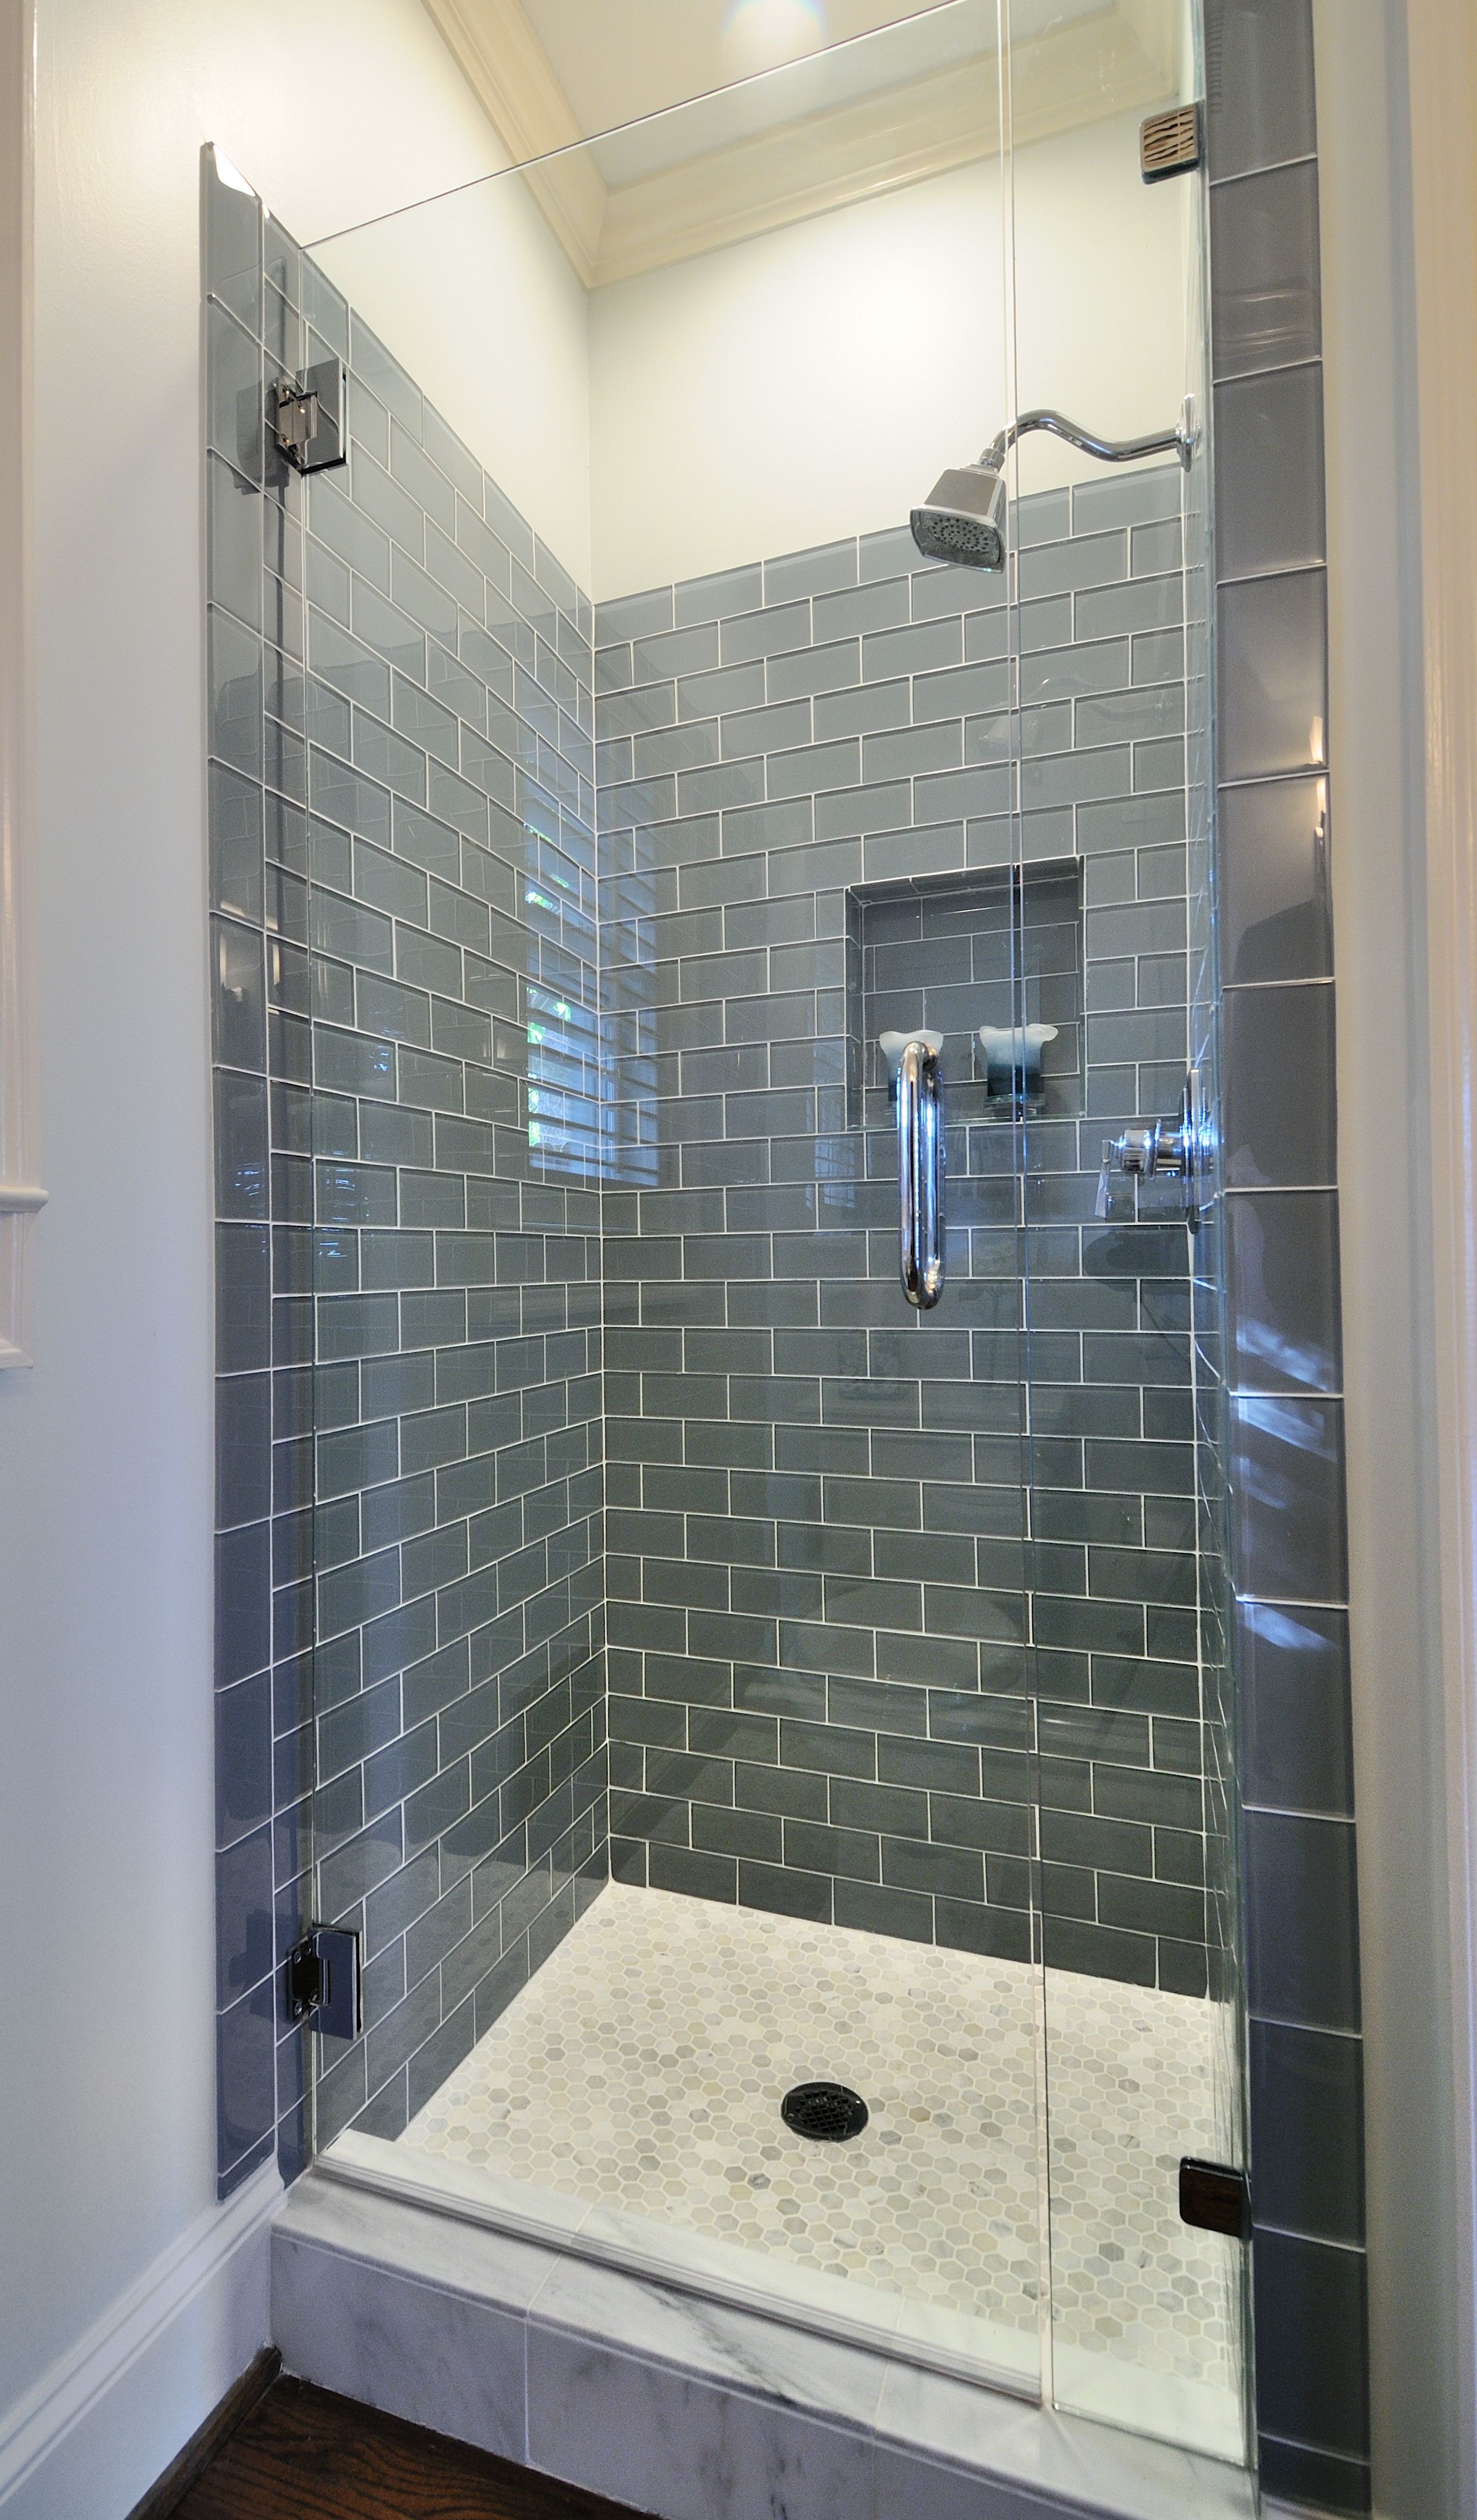 img/bathroom-tile-ideas-grey-and-blue-de.jpg